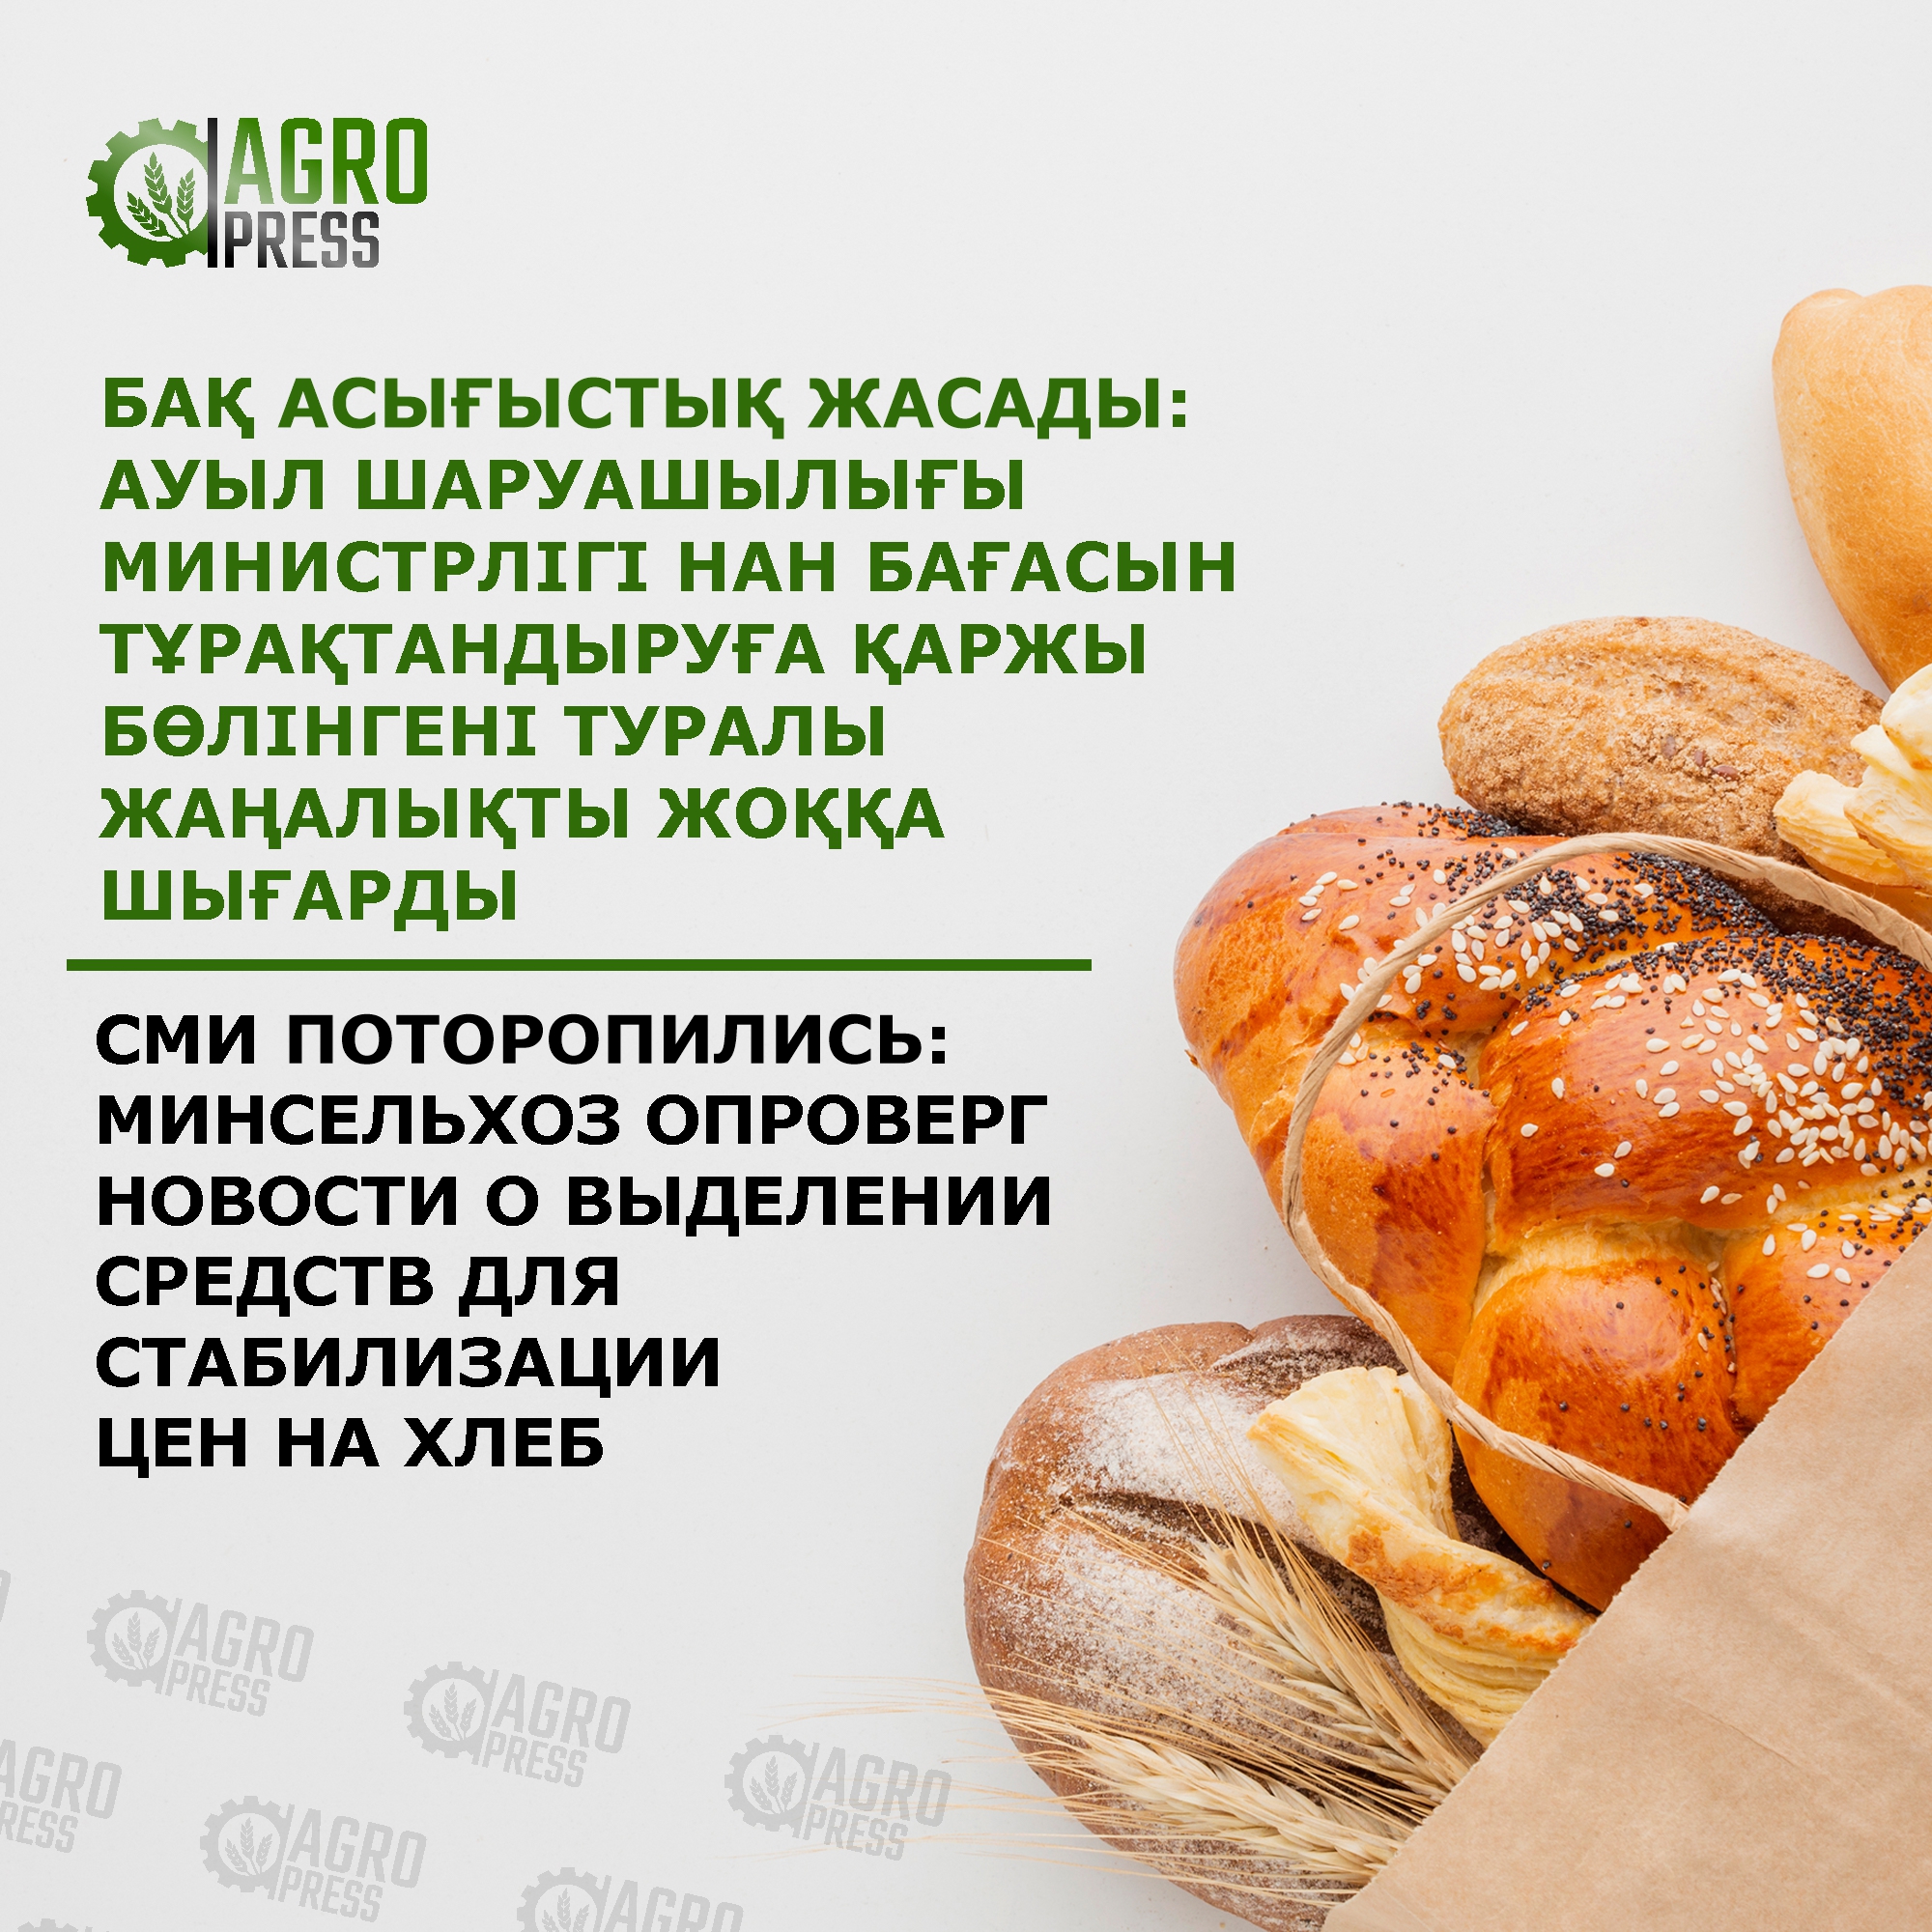 СМИ поторопились: Минсельхоз опроверг новости о выделении средств для стабилизации цен на хлеб